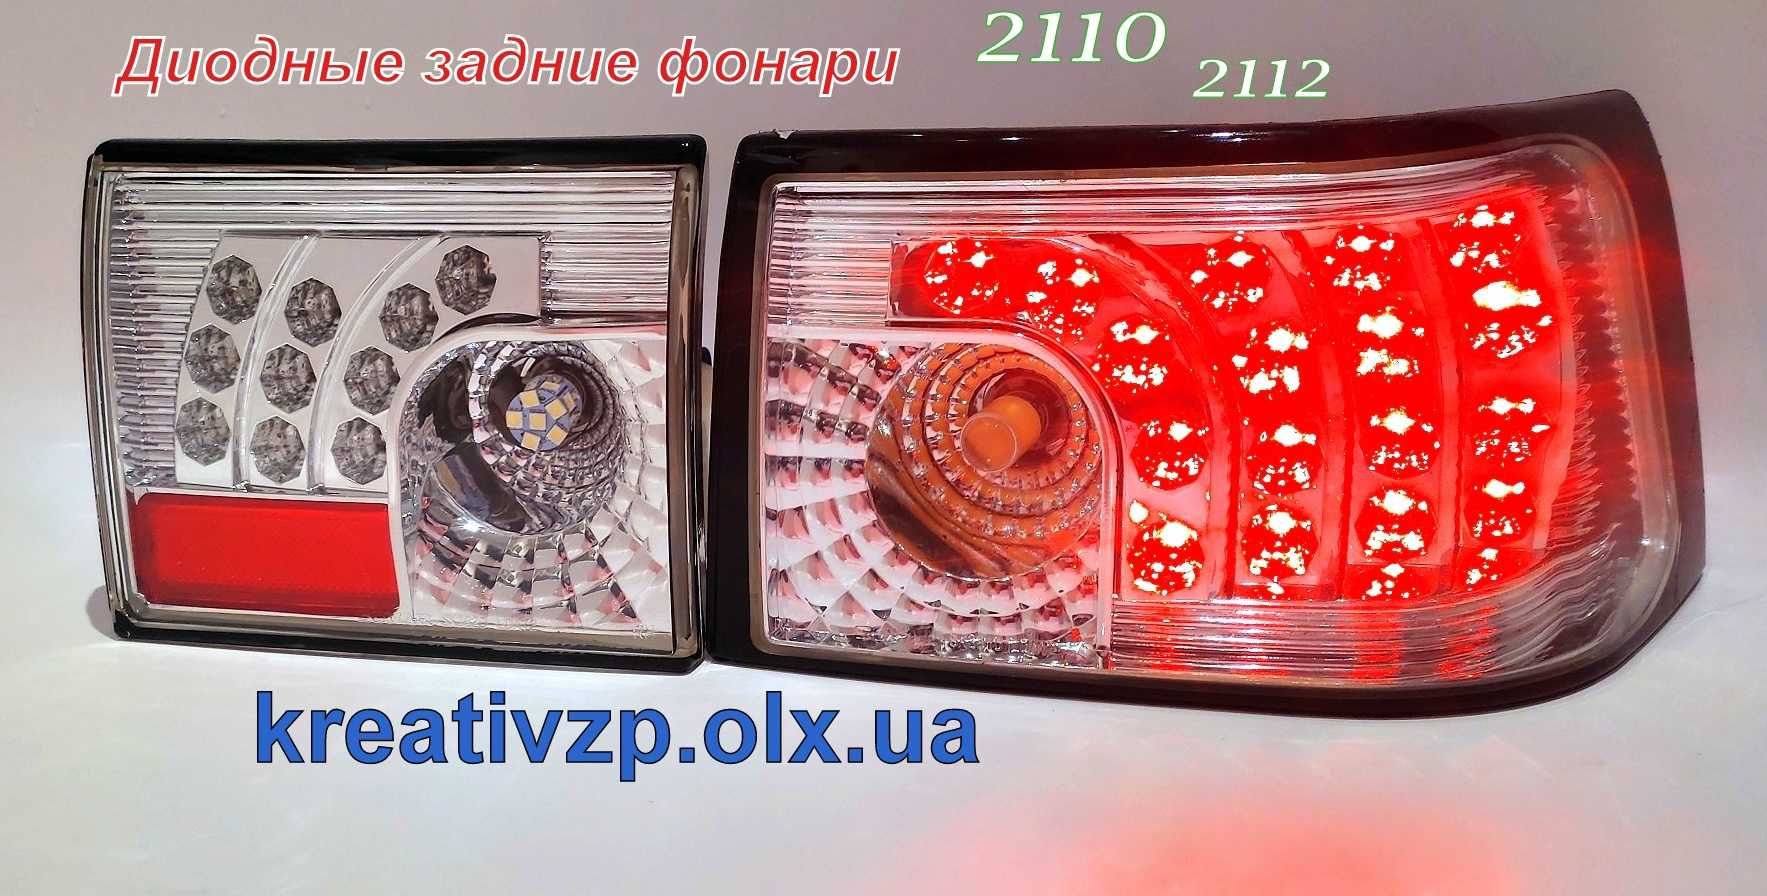 Продам диодные задние фонари Ваз 2110,2112